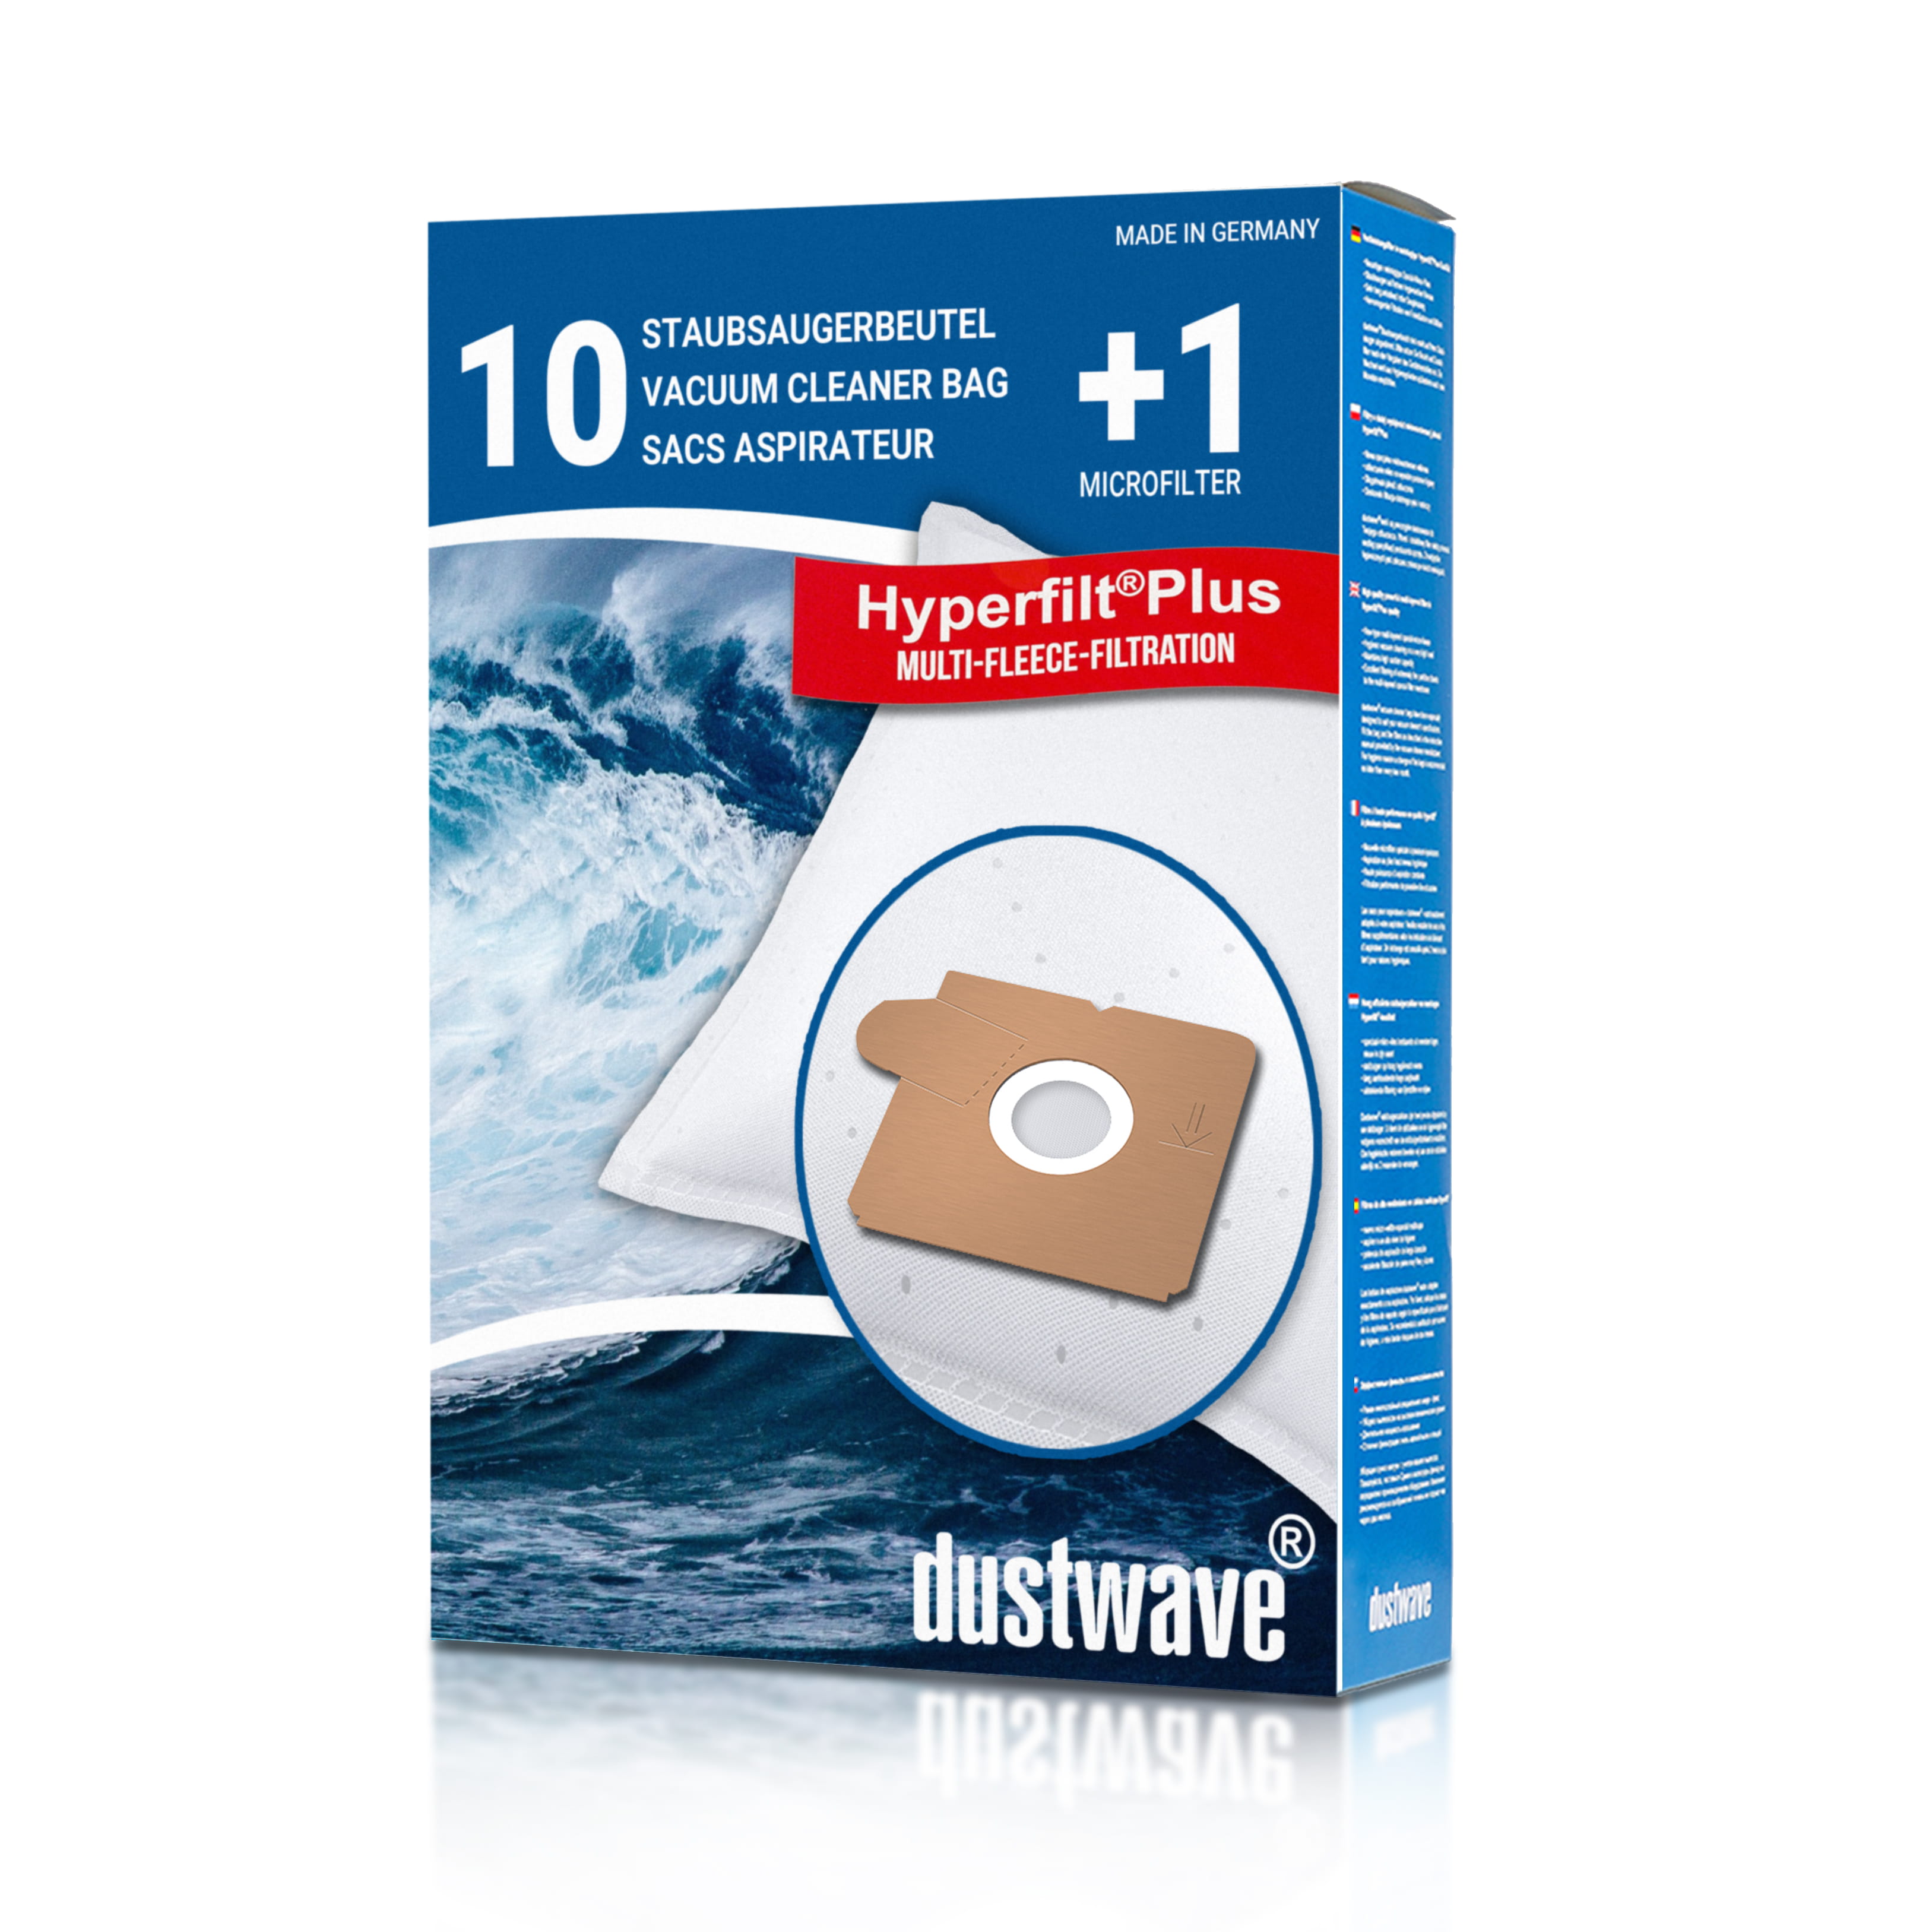 Dustwave® 10 Staubsaugerbeutel für AEG Vampyrino VS 030-1 - hocheffizient mit Hygieneverschluss - Made in Germany